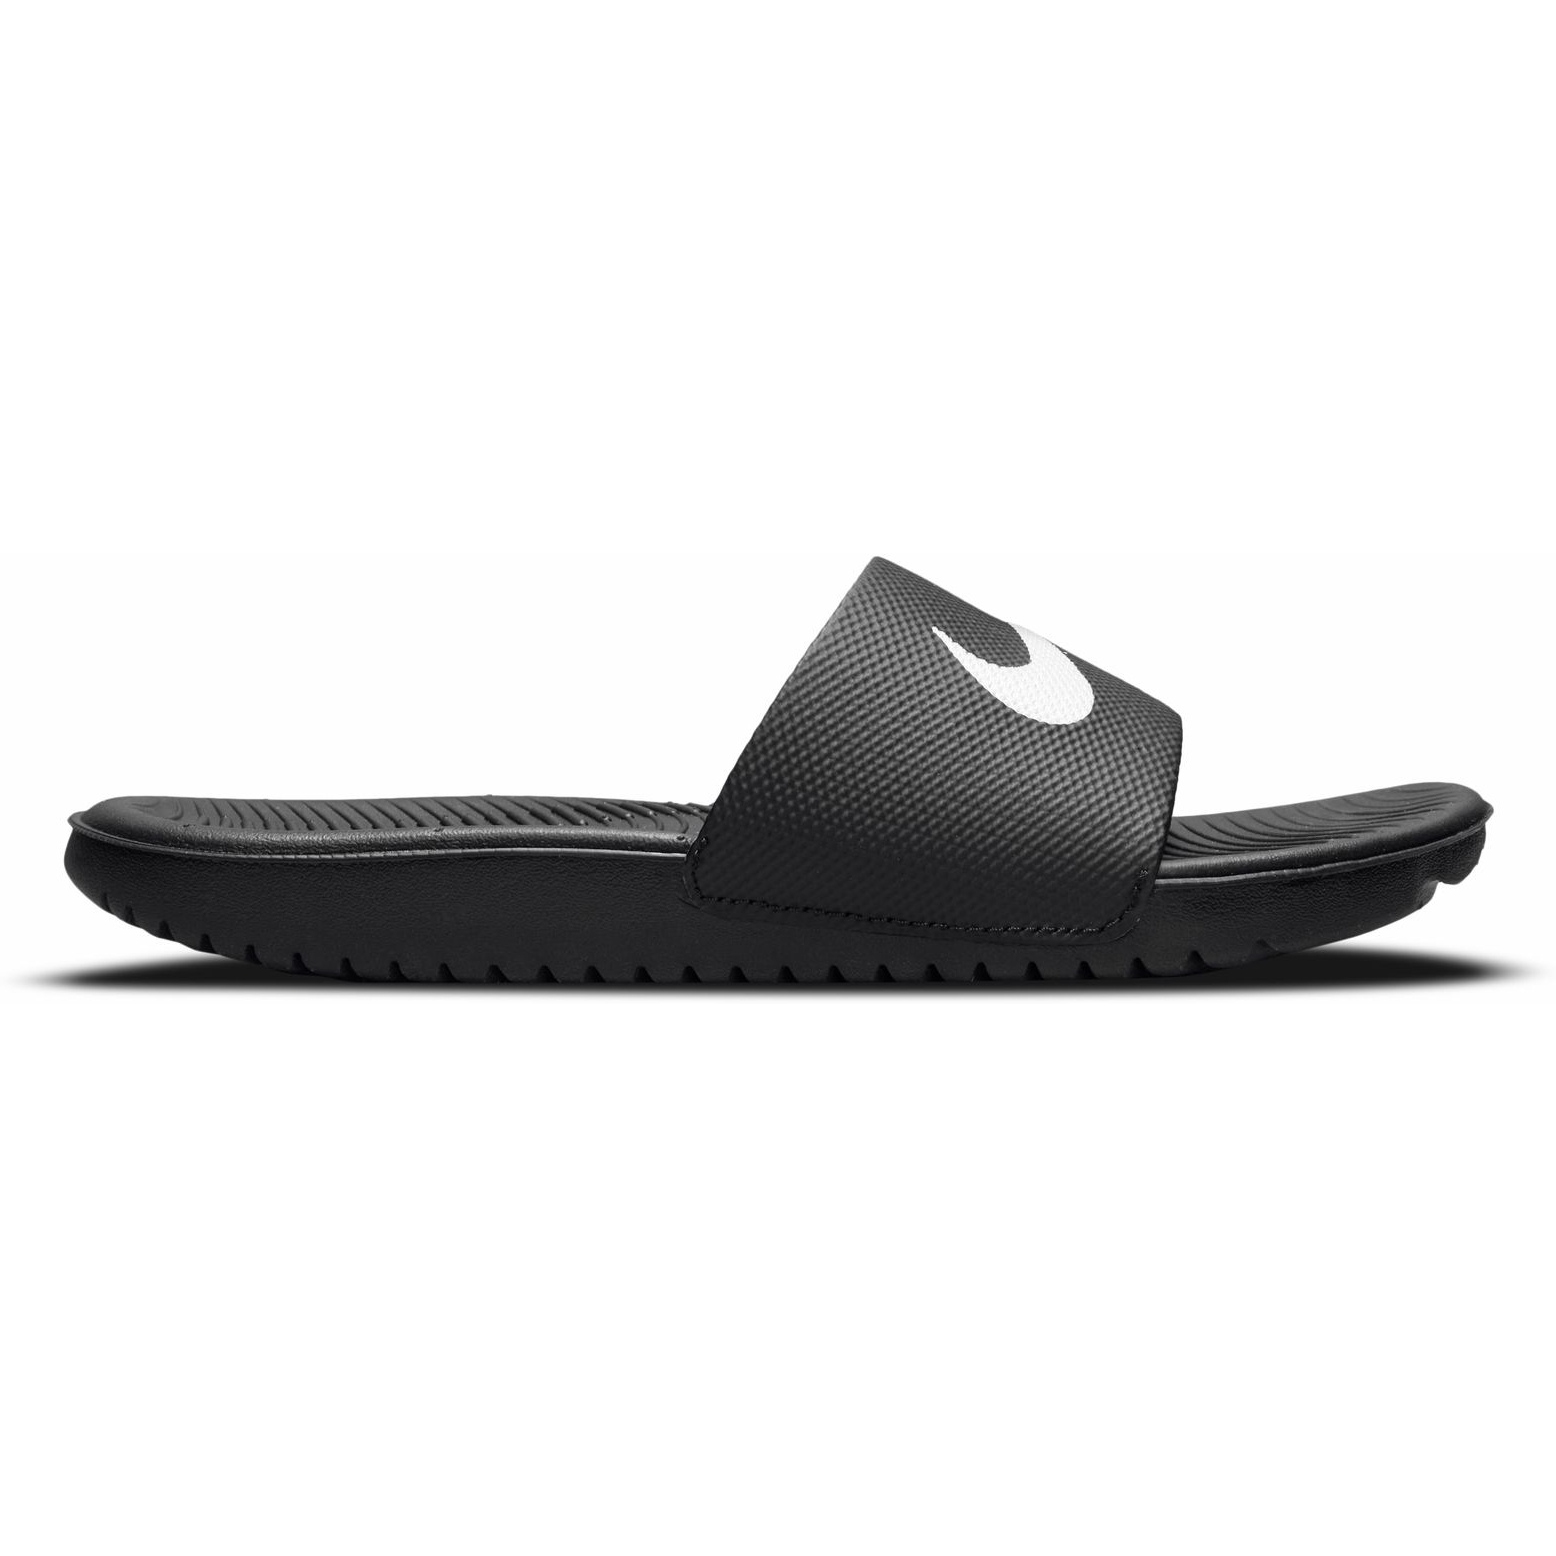 Produktbild von Nike Kawa Sandalen Kinder - schwarz/weiß 819352-001